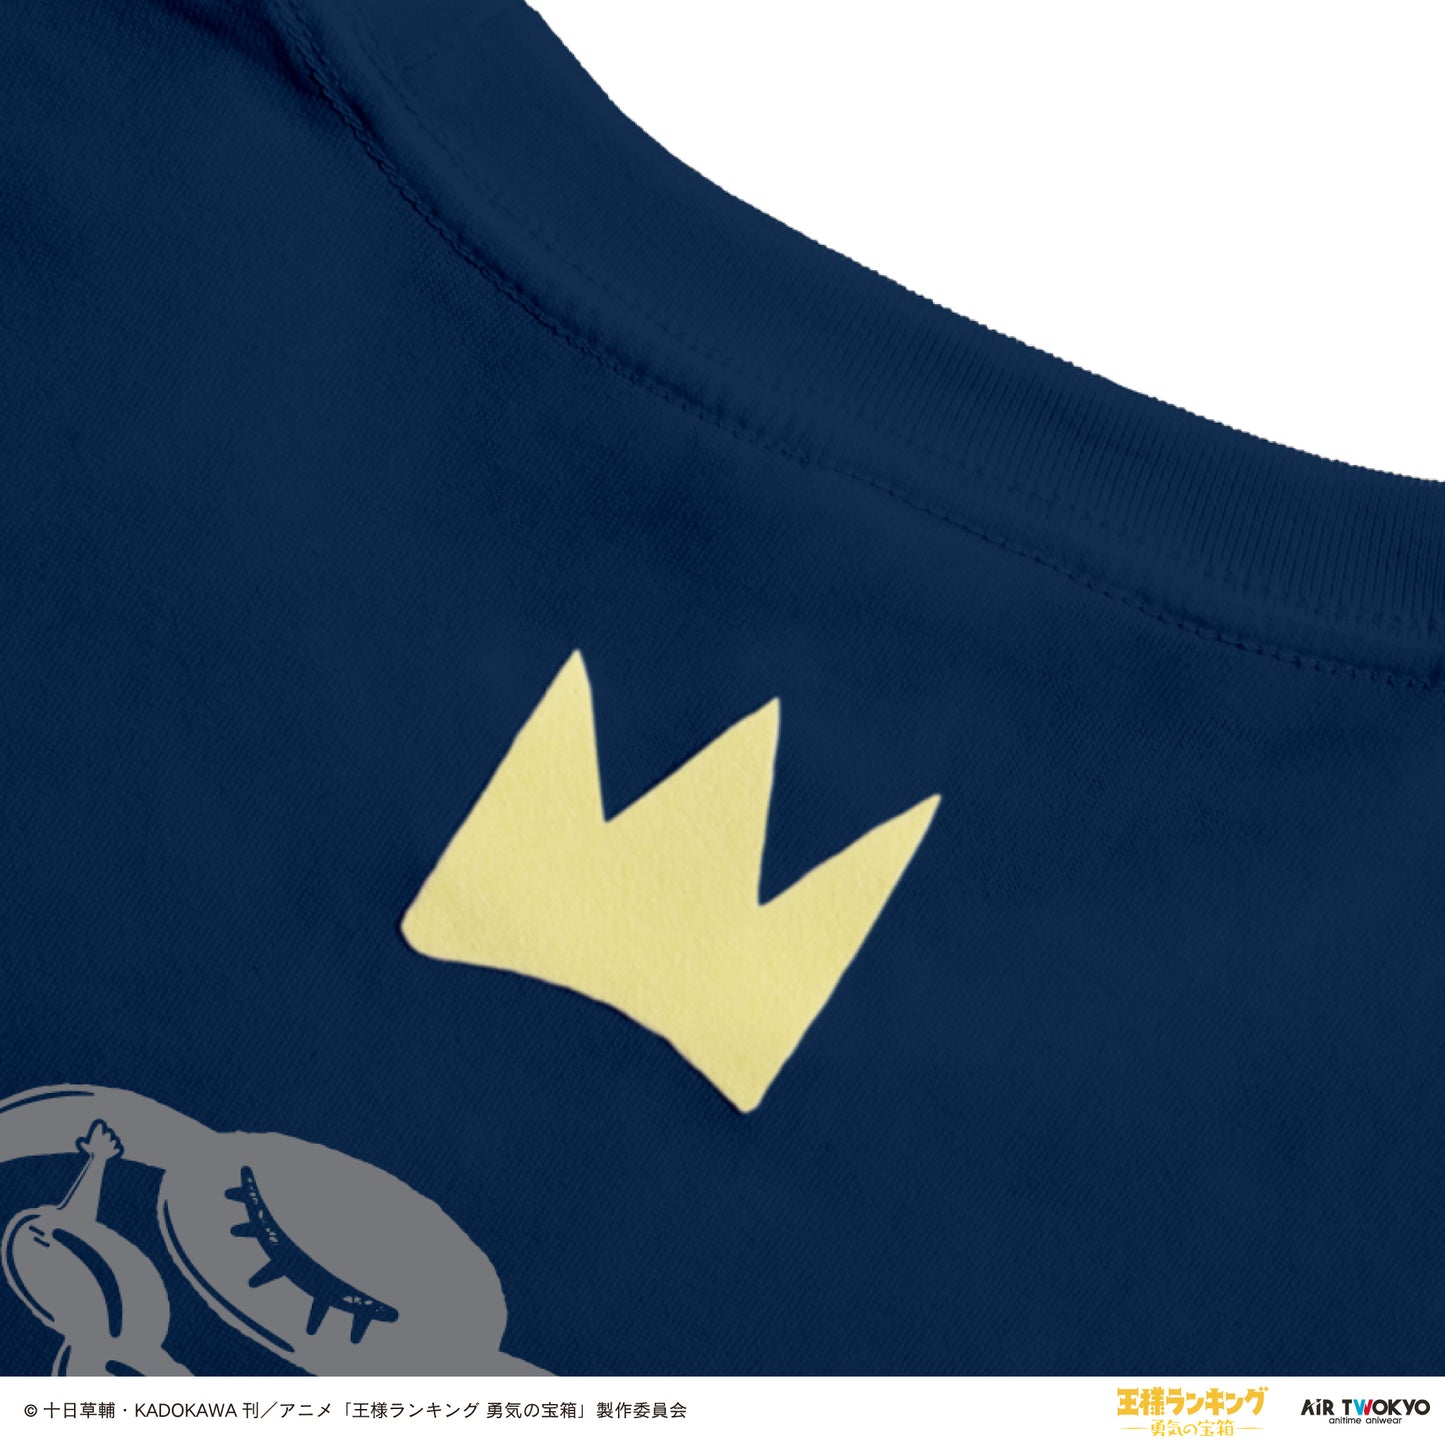 《國王排名 勇氣的寶箱》场景插画 T 恤 5